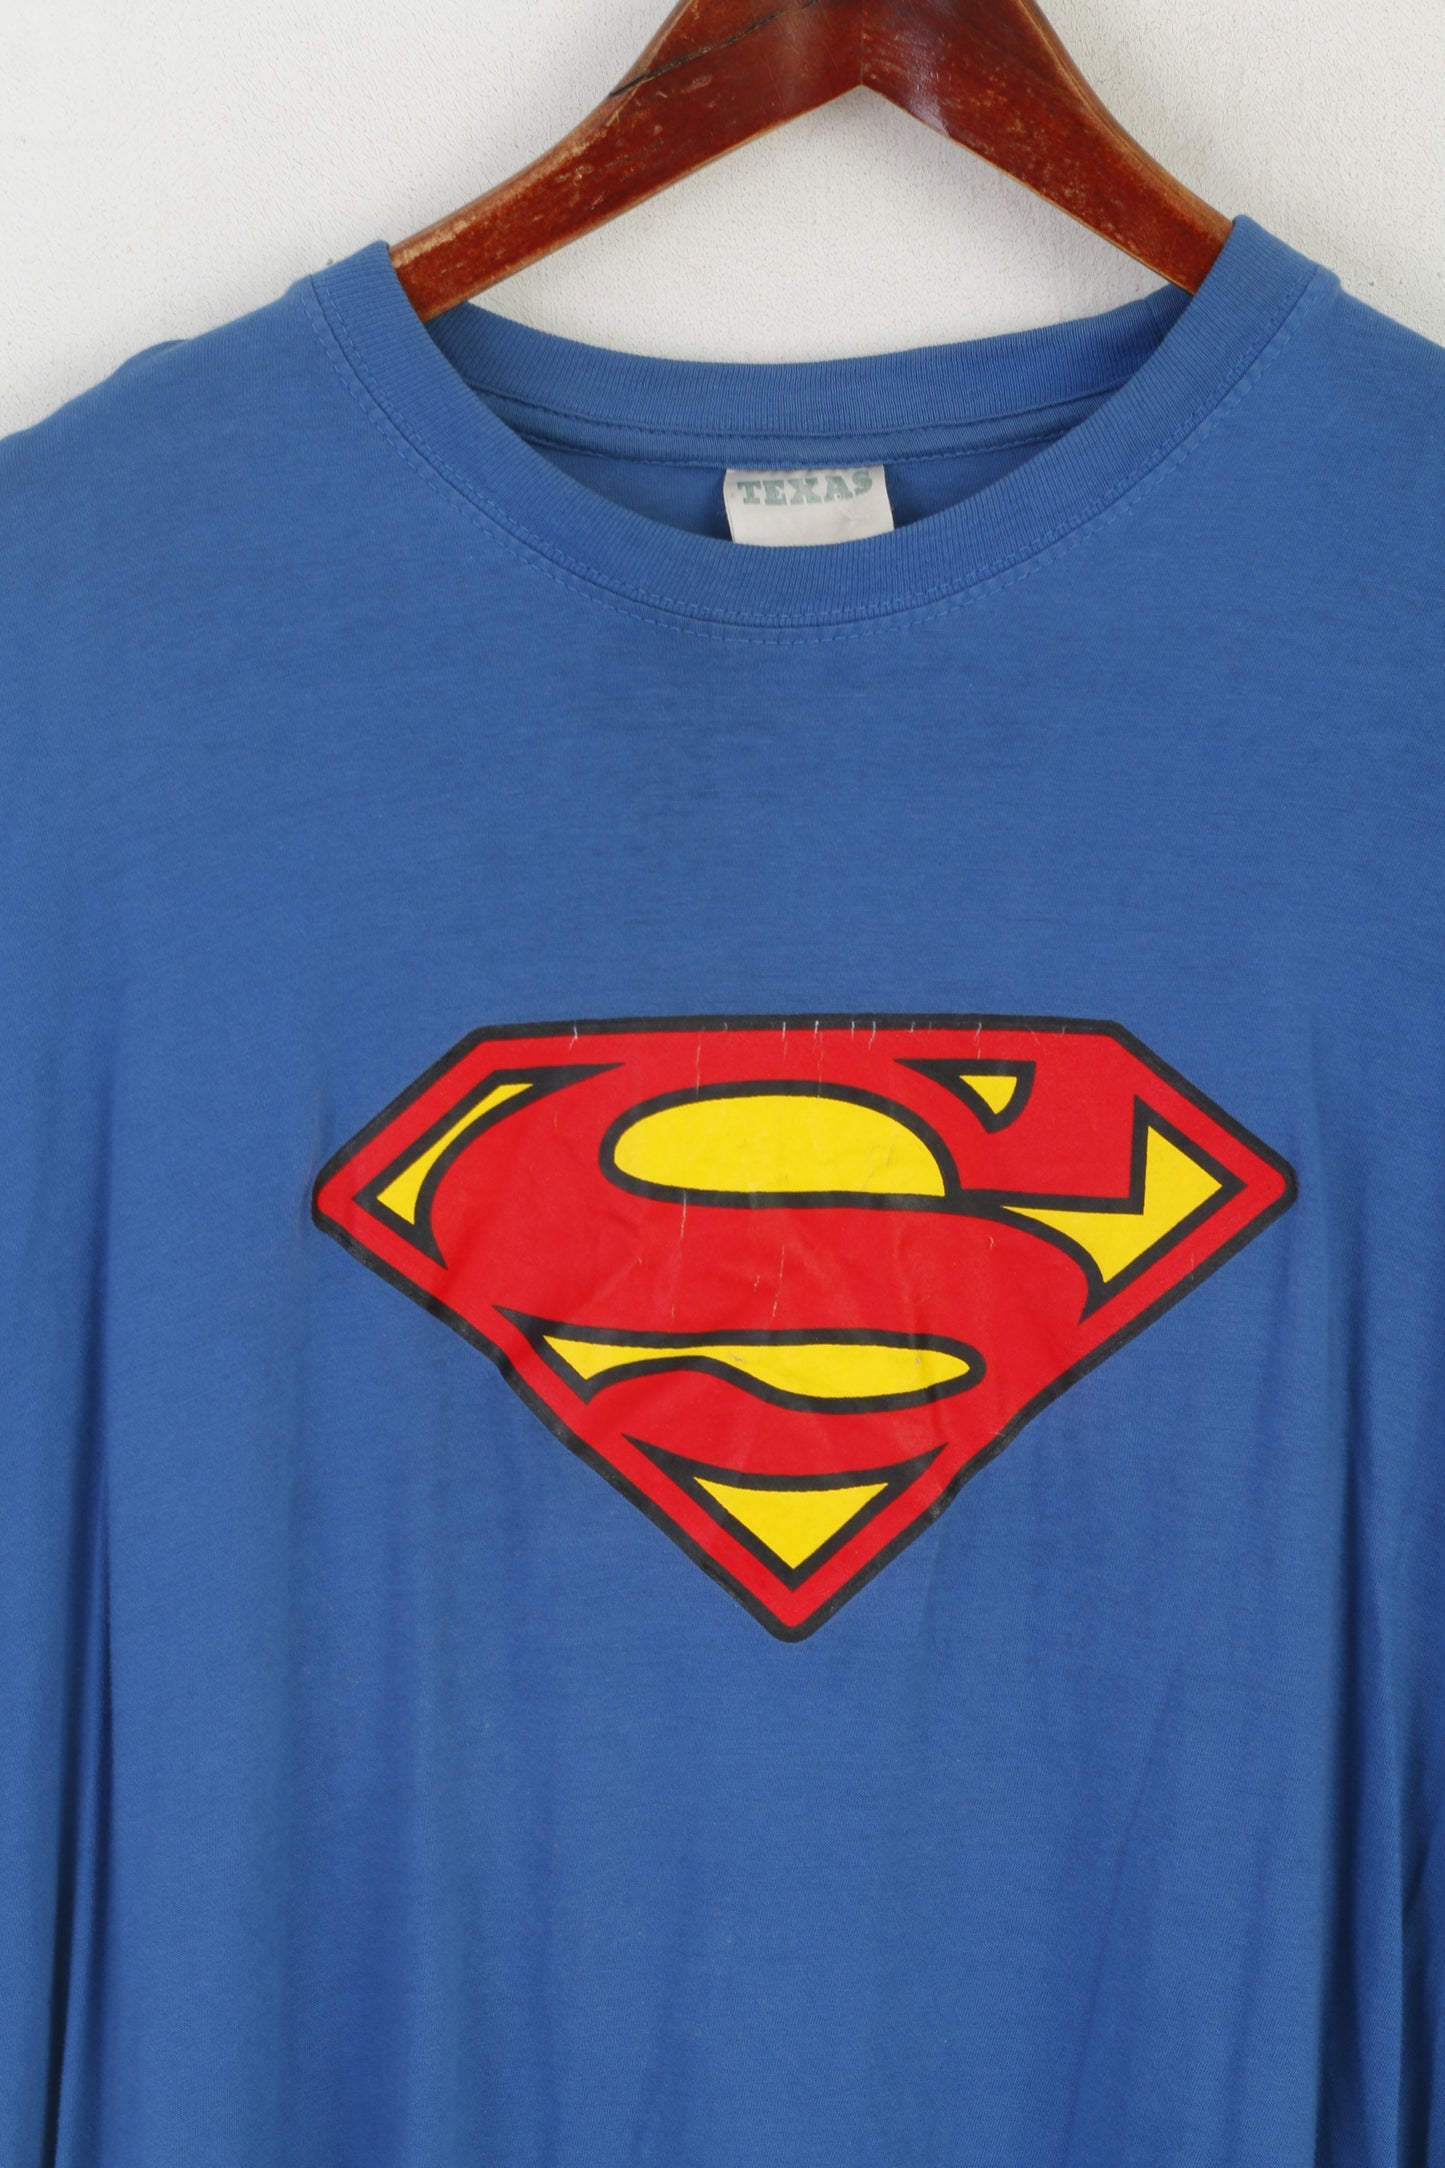 Texas Men M T- Shirt Blue Cotton Graphic Superman Vintage Crew Neck Top